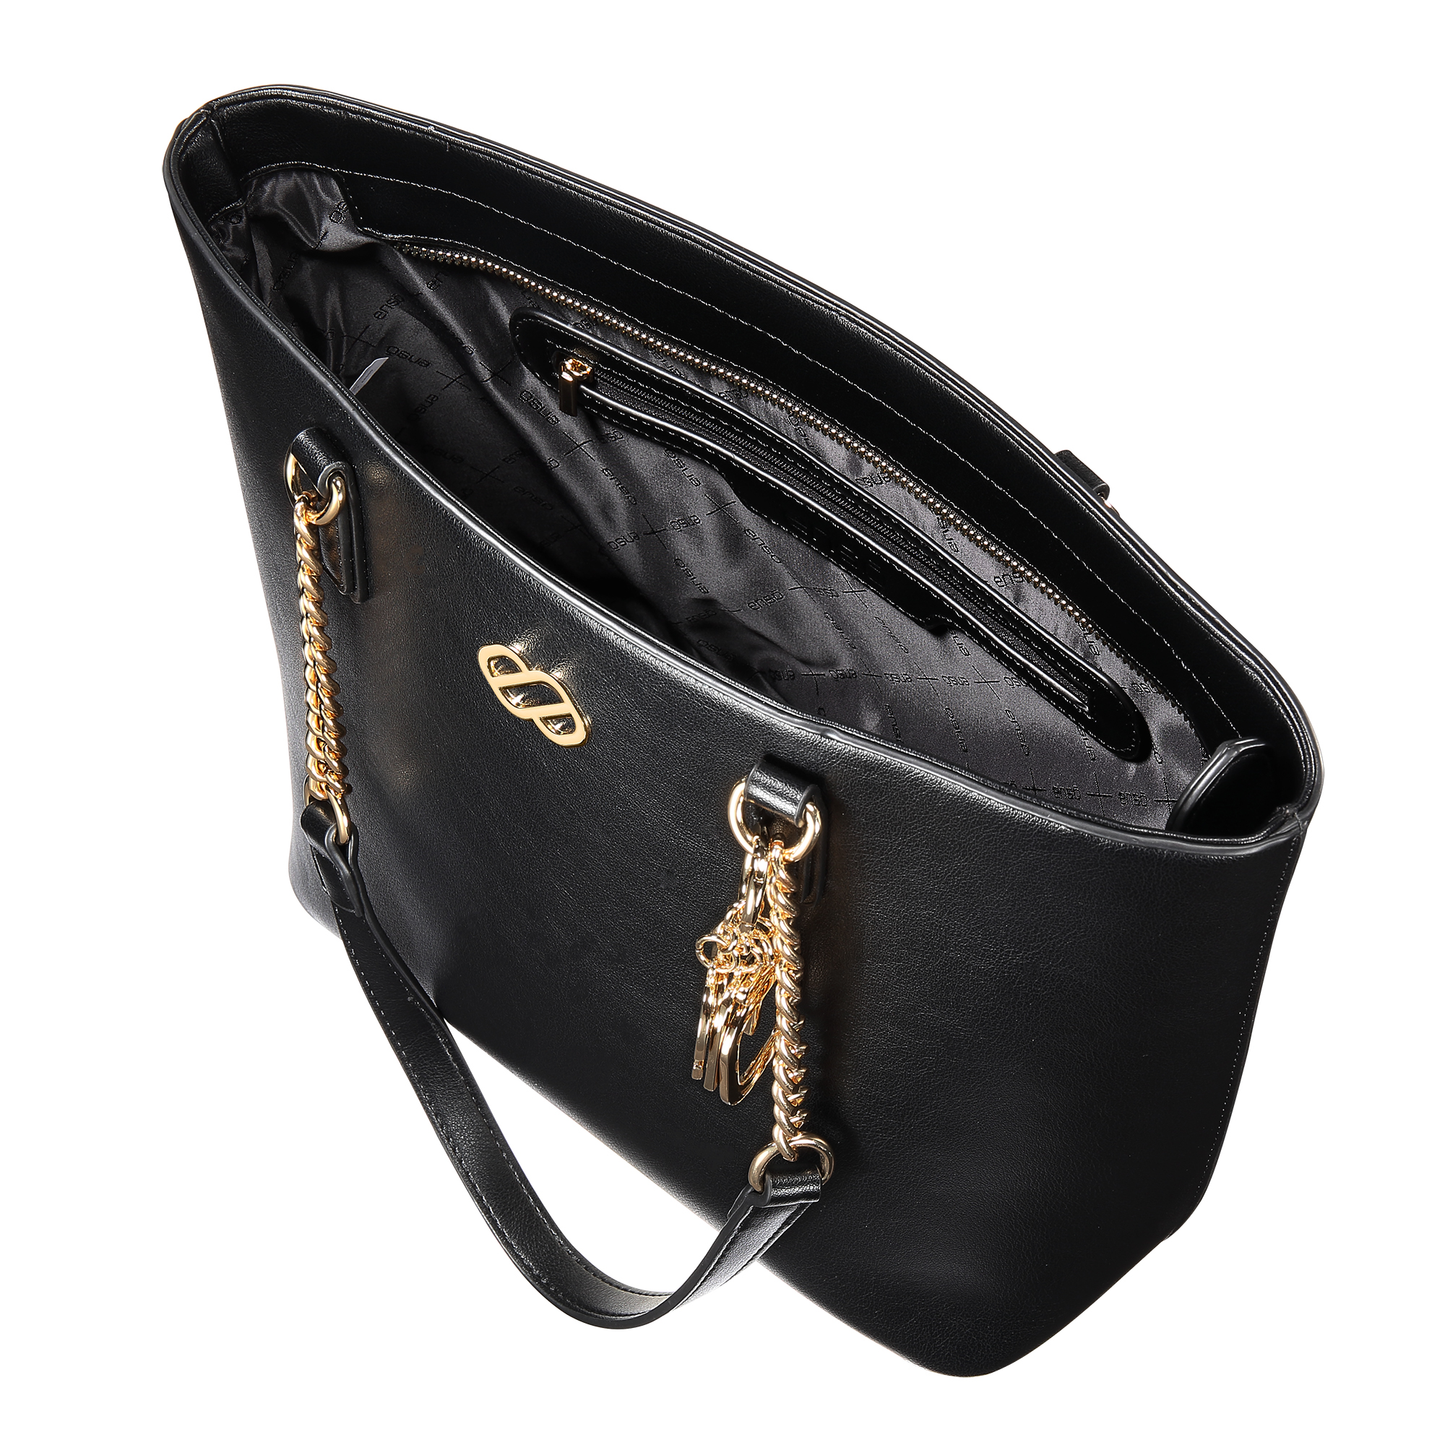 Bolsa Tote Enso Black Bags EB310TTB Tipo Urbana Para Mujer